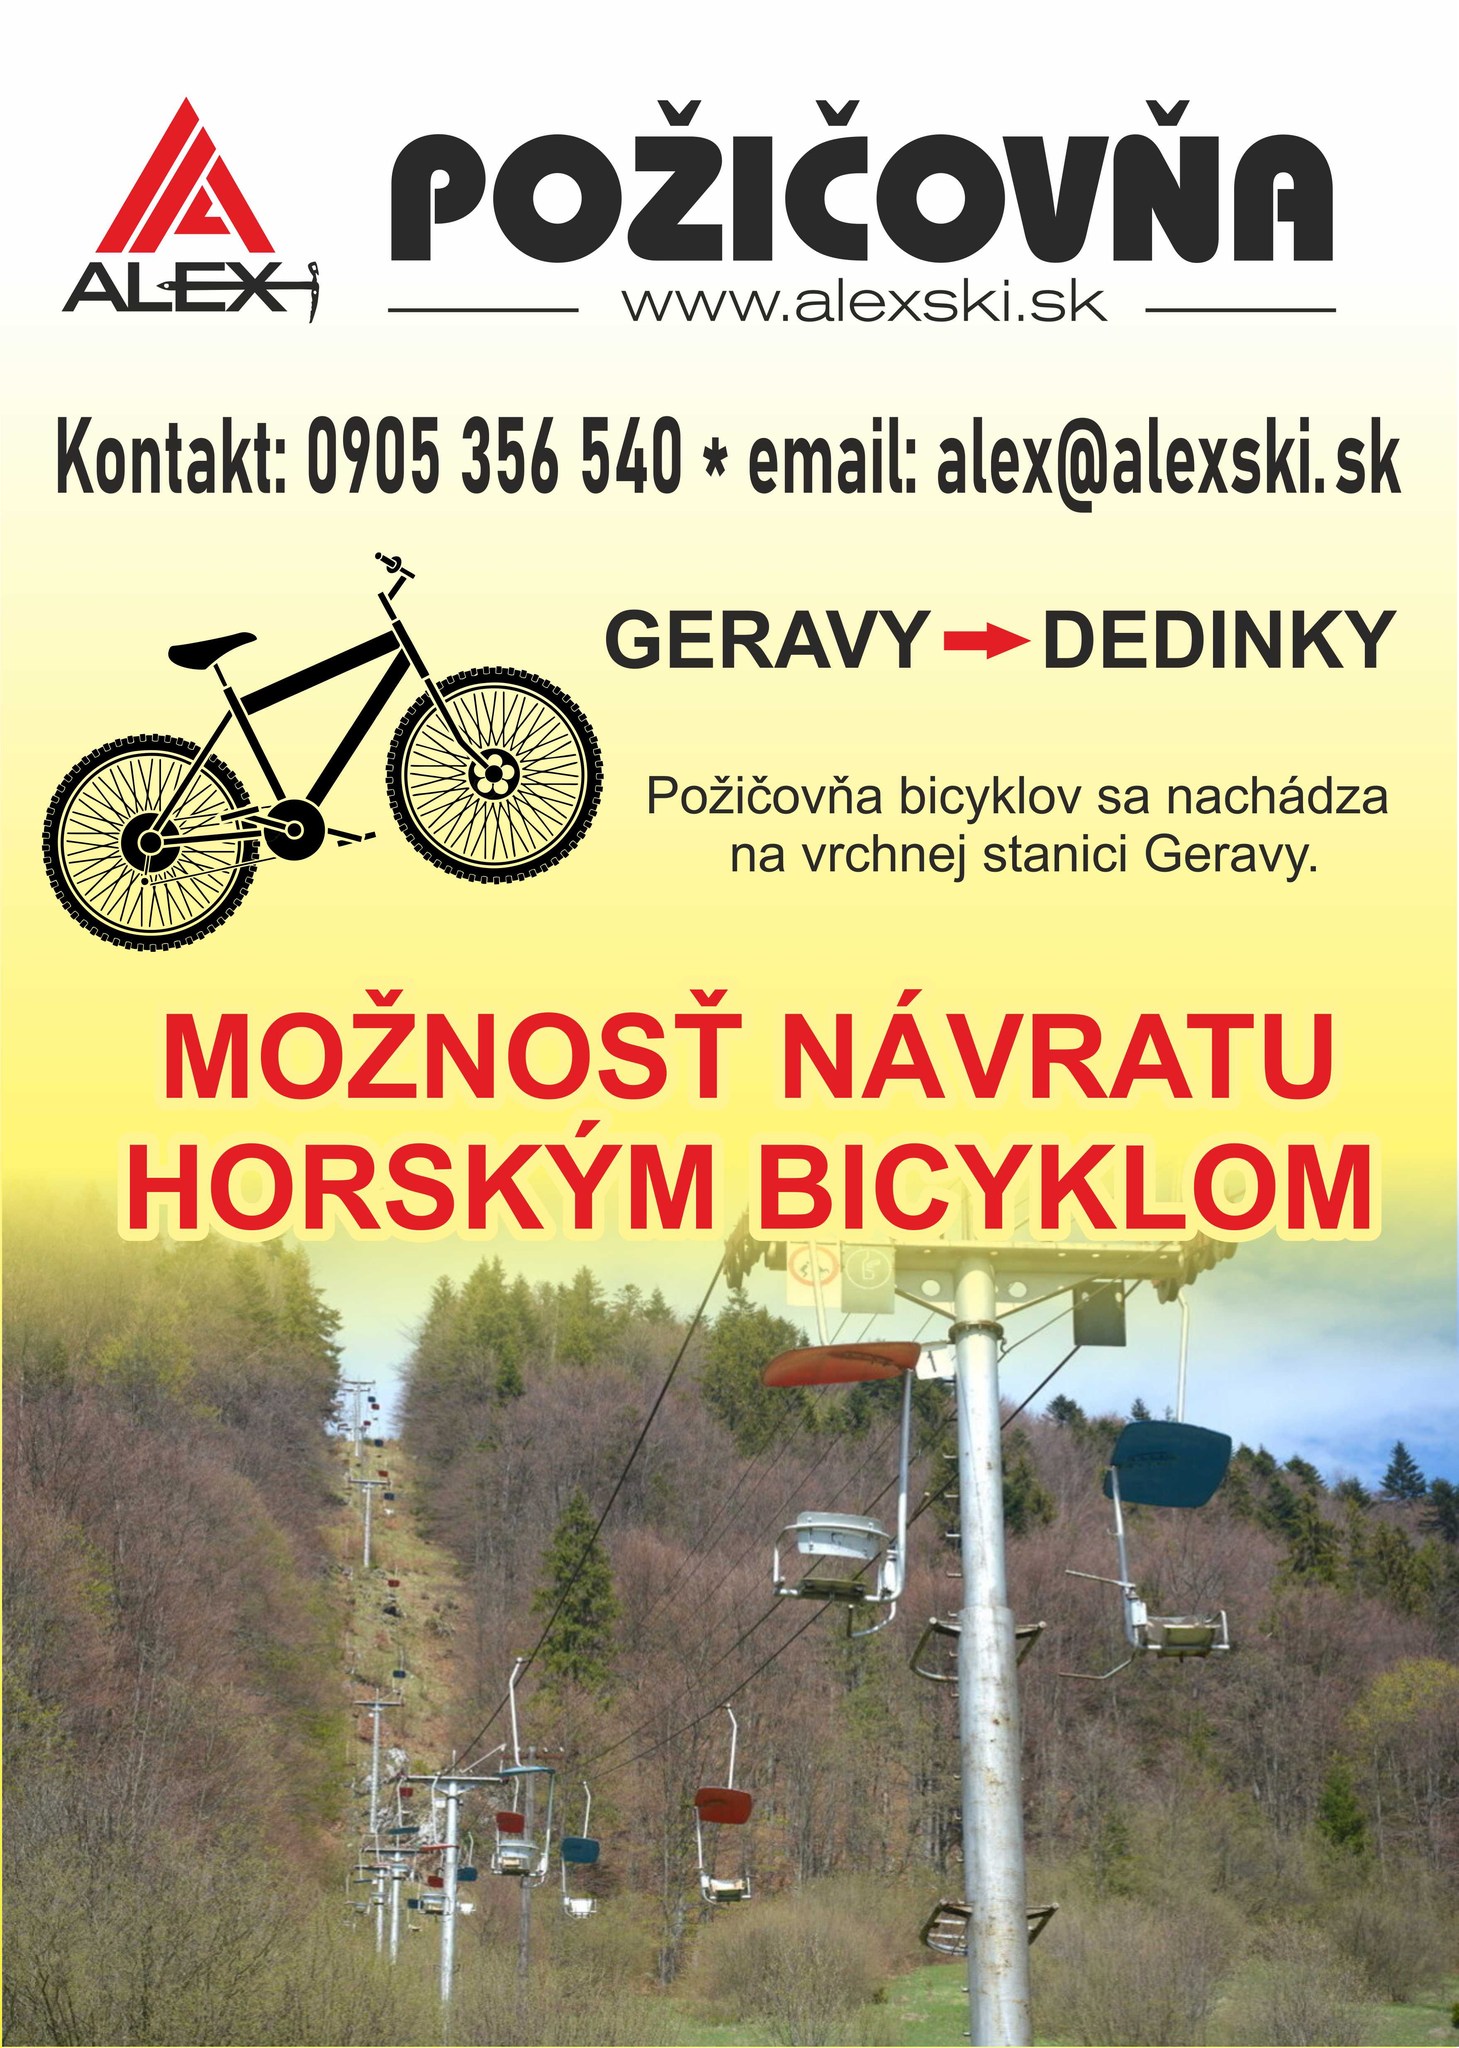 Turistické informačné centrum ALEX v Slovenskom raji / požičovňa bicyklov: Otváracie hodiny